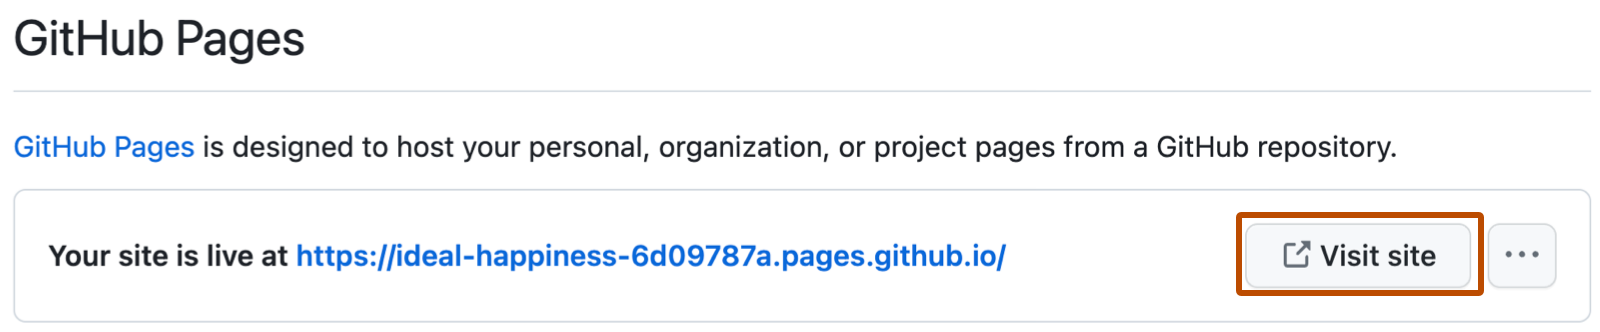 Captura de tela de uma mensagem de confirmação para o GitHub Pages listando a URL do site. À direita de uma grande URL em azul, haverá um botão "Visitar o site" com o contorno em laranja escuro.